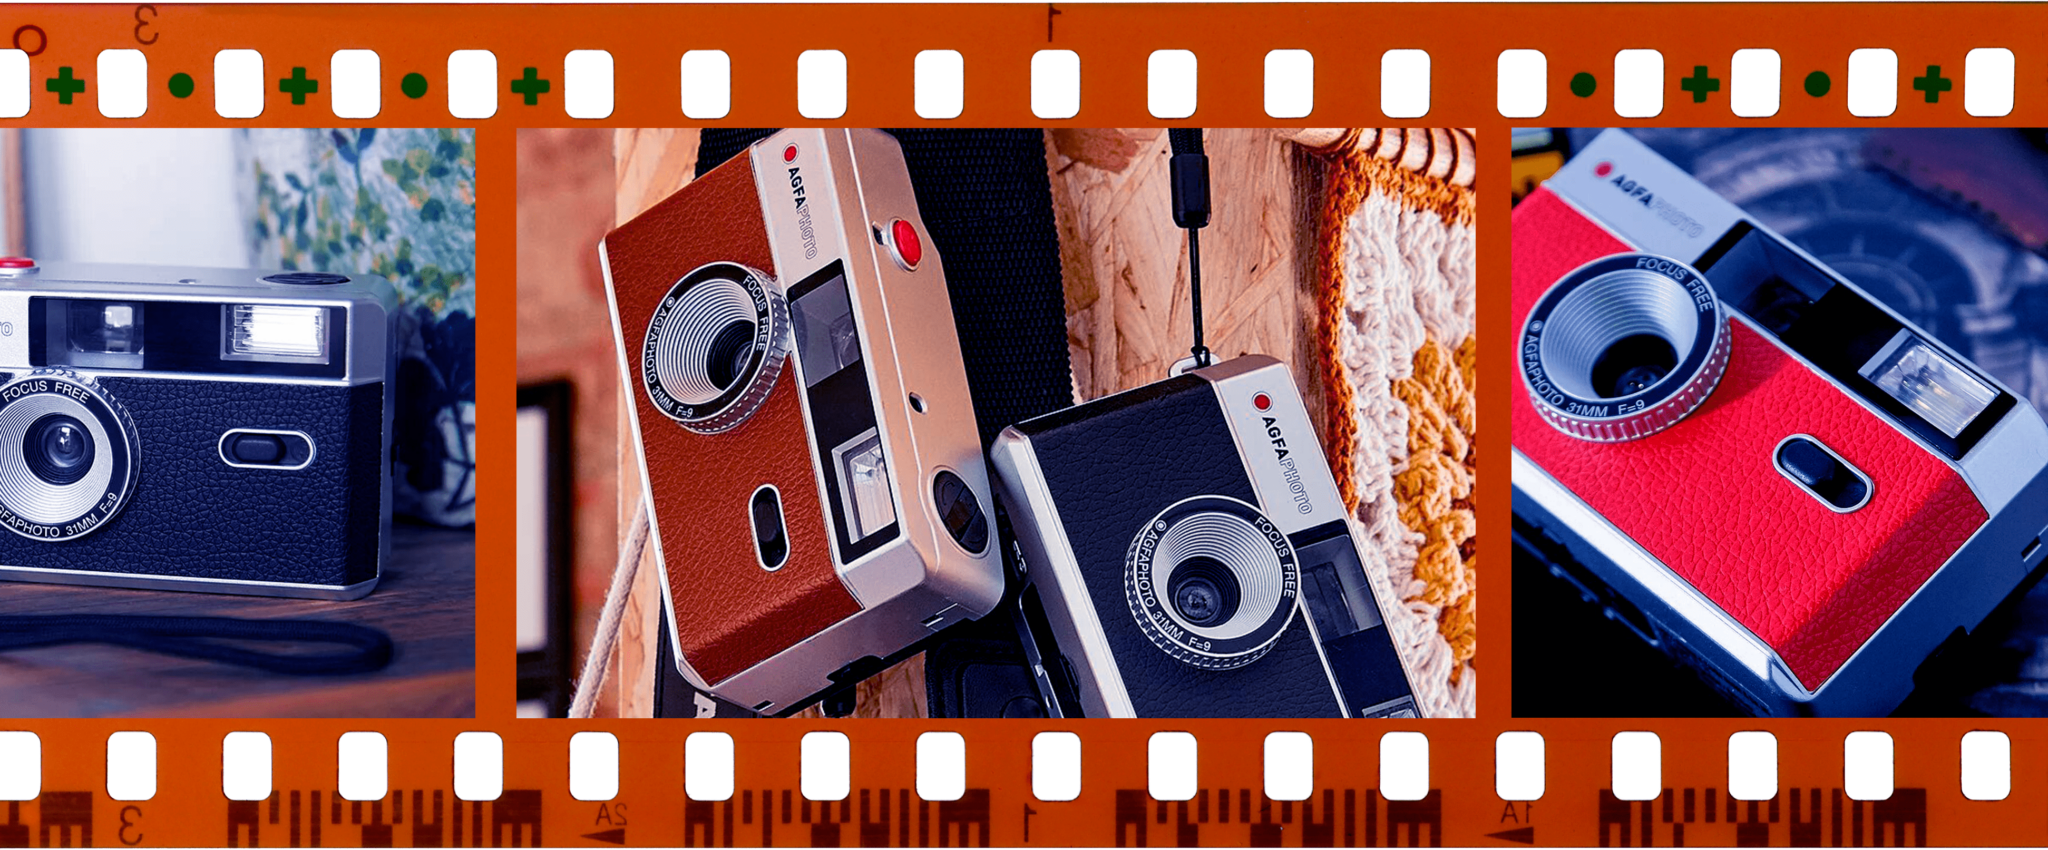 Cámara de fotos Agfa analógica de 35mm. roja : : Electrónica